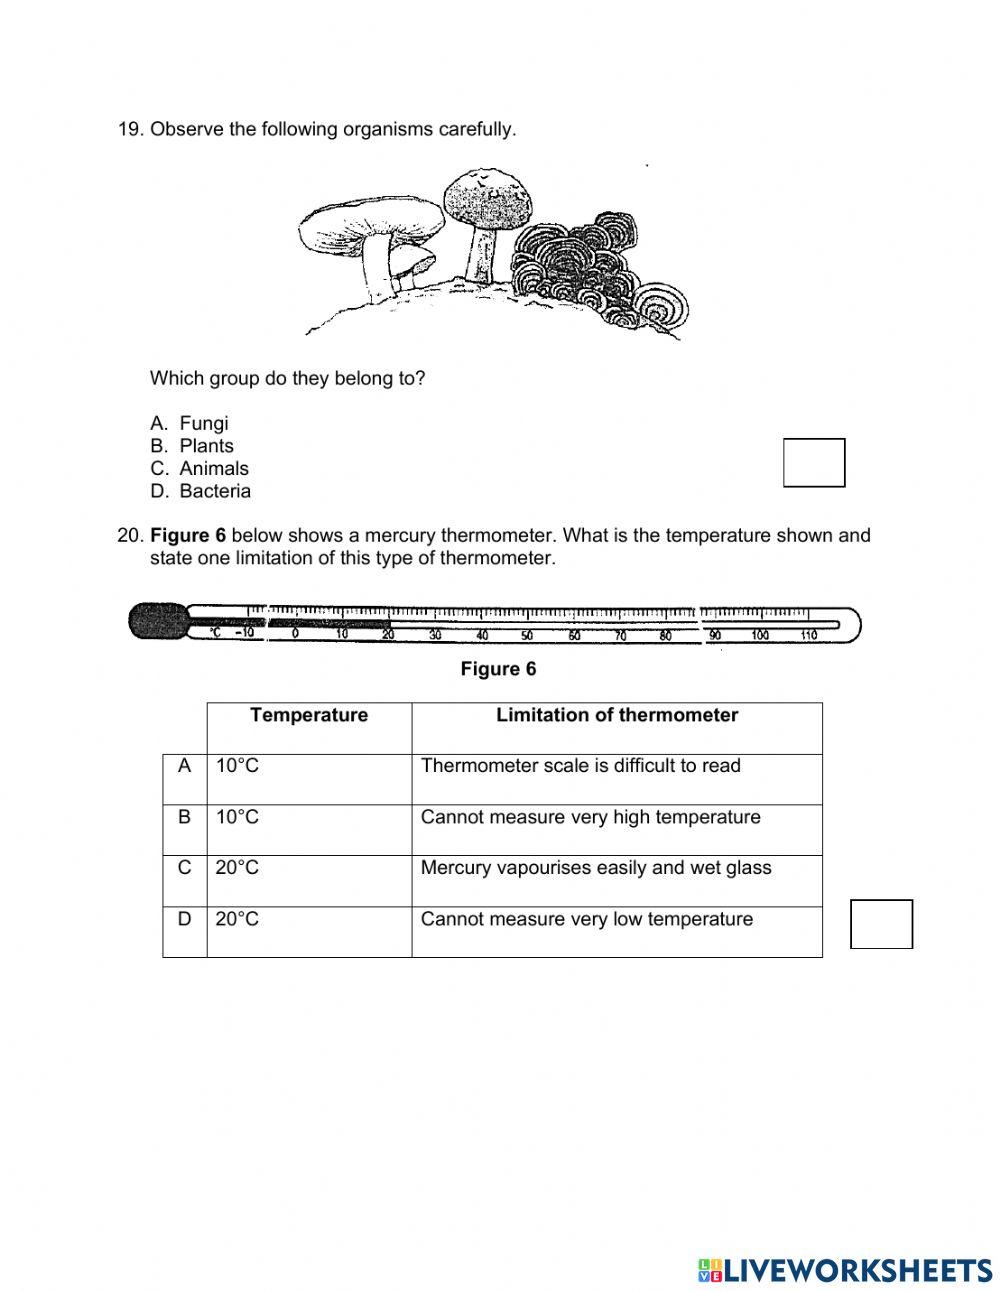 Diagnostic test (question 11 - 20)